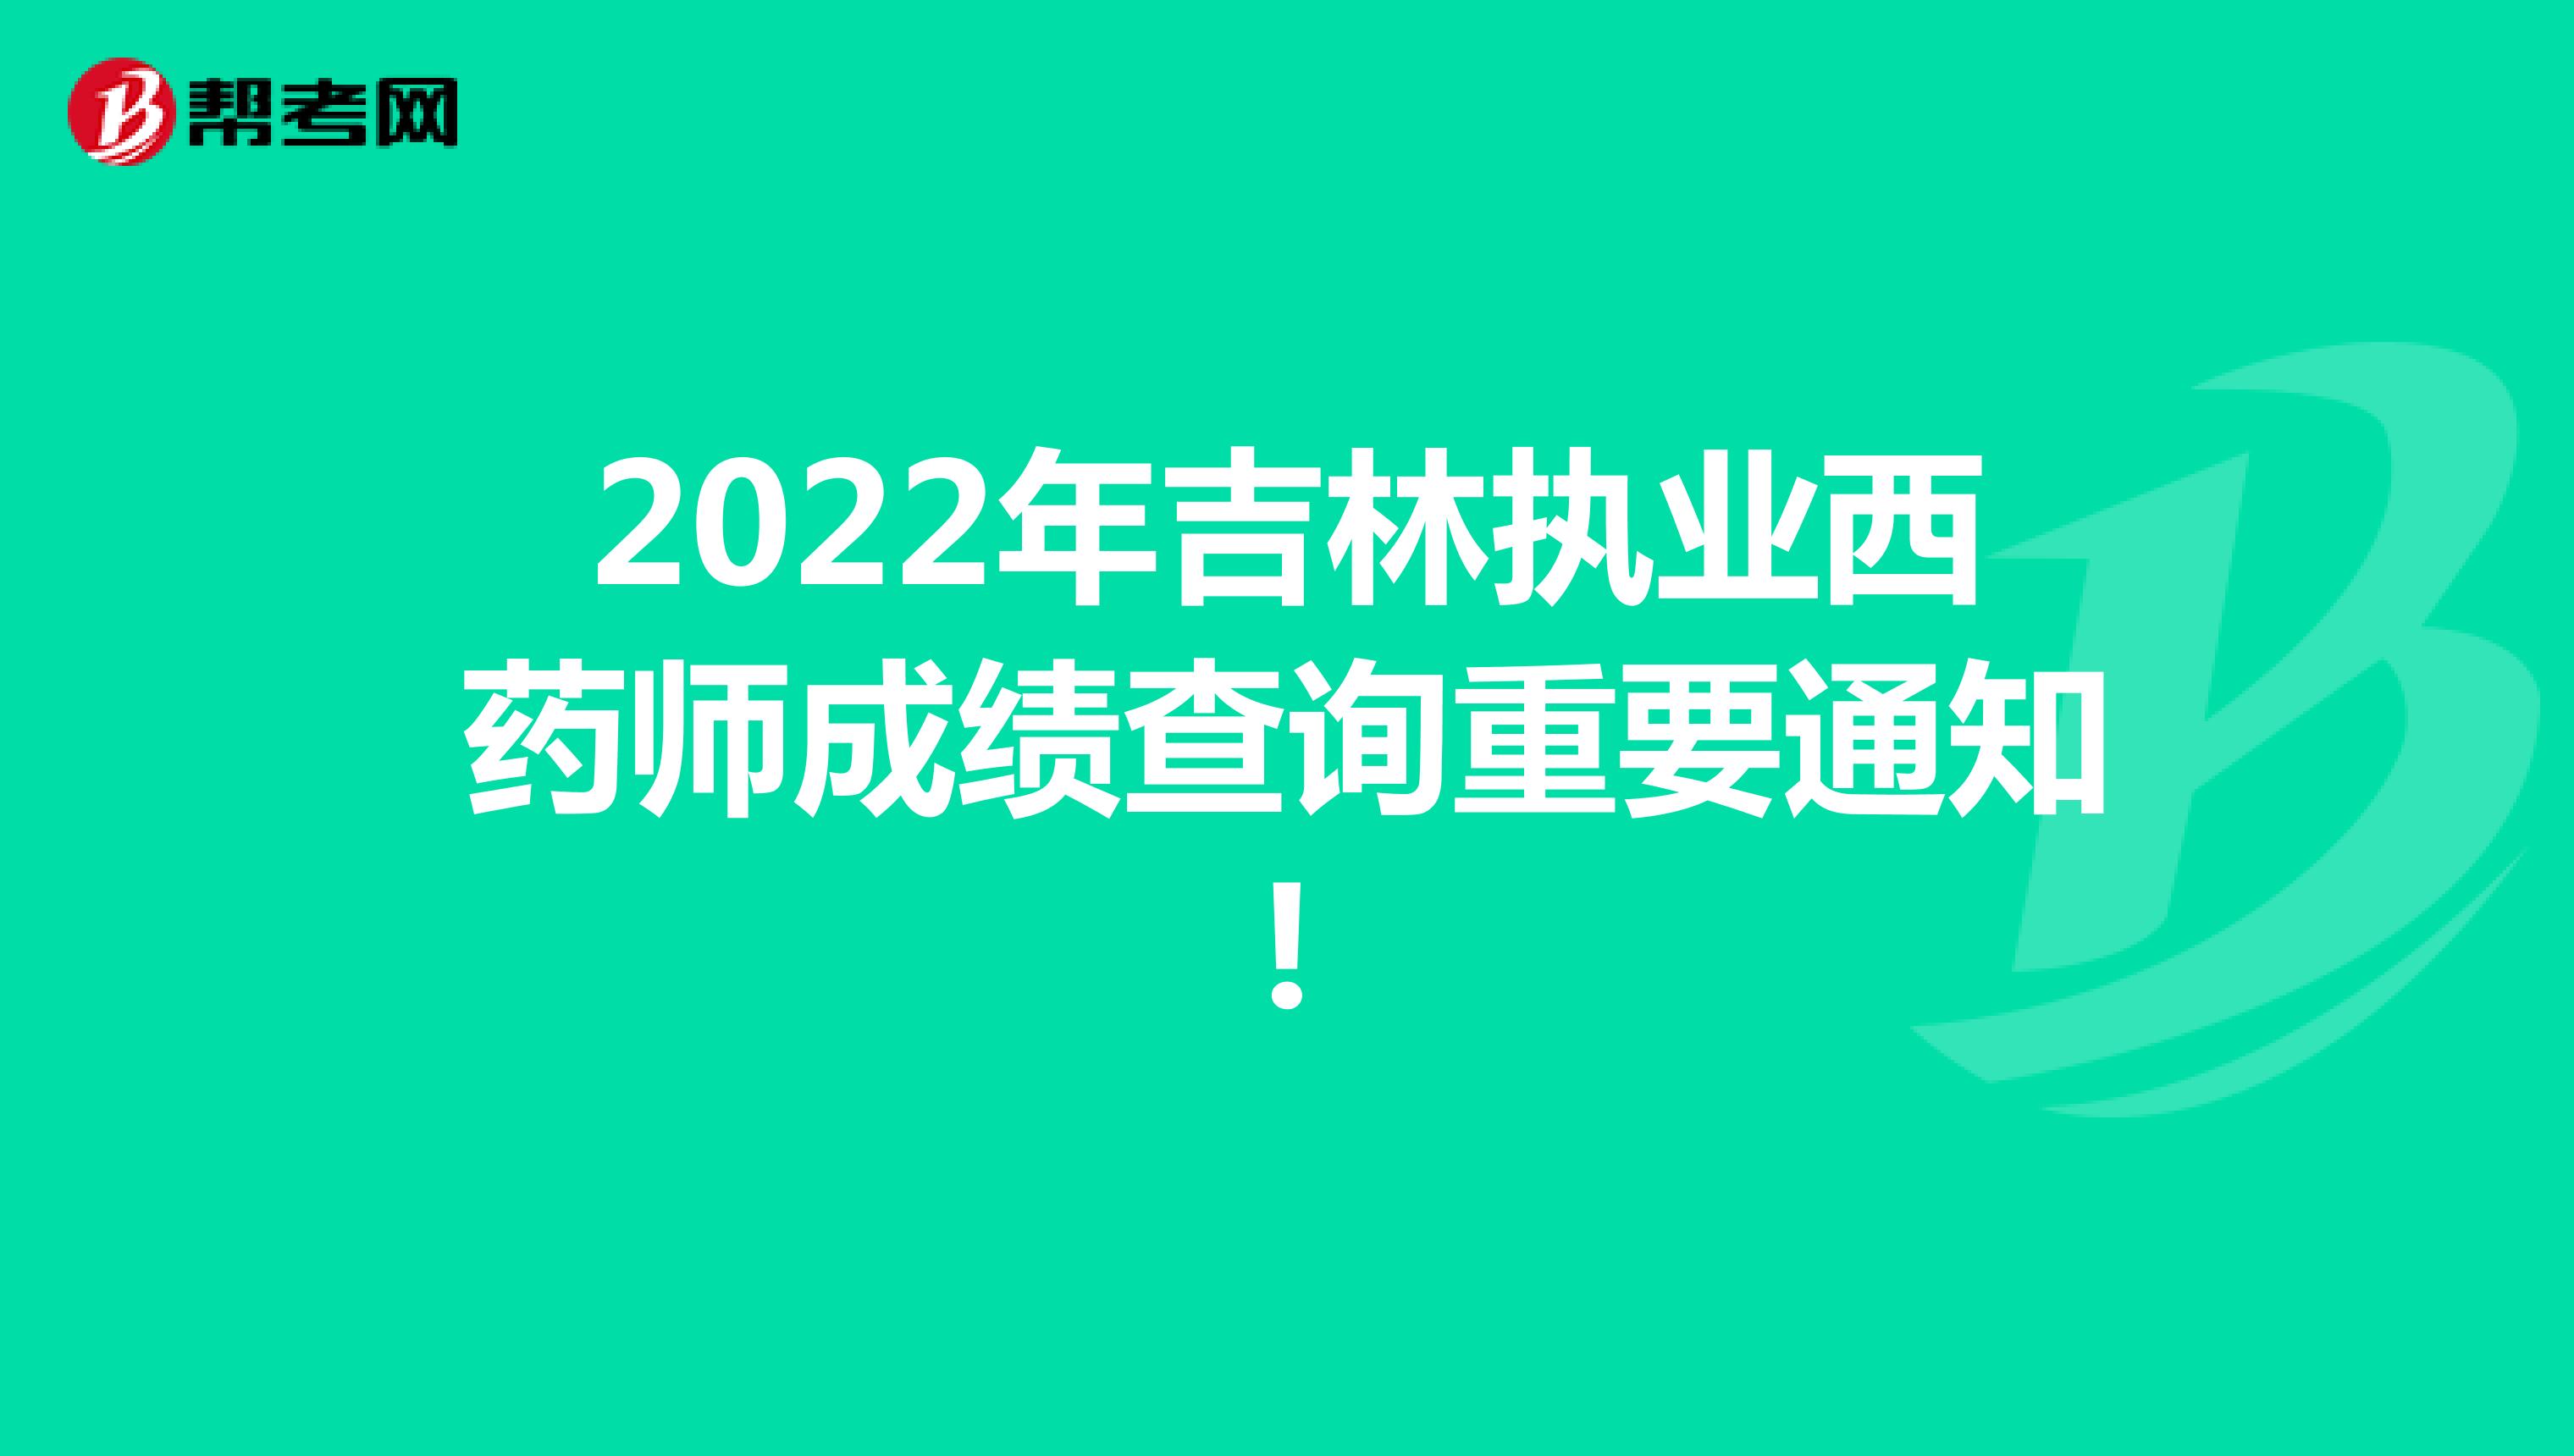 2022年吉林执业西药师成绩查询重要通知!